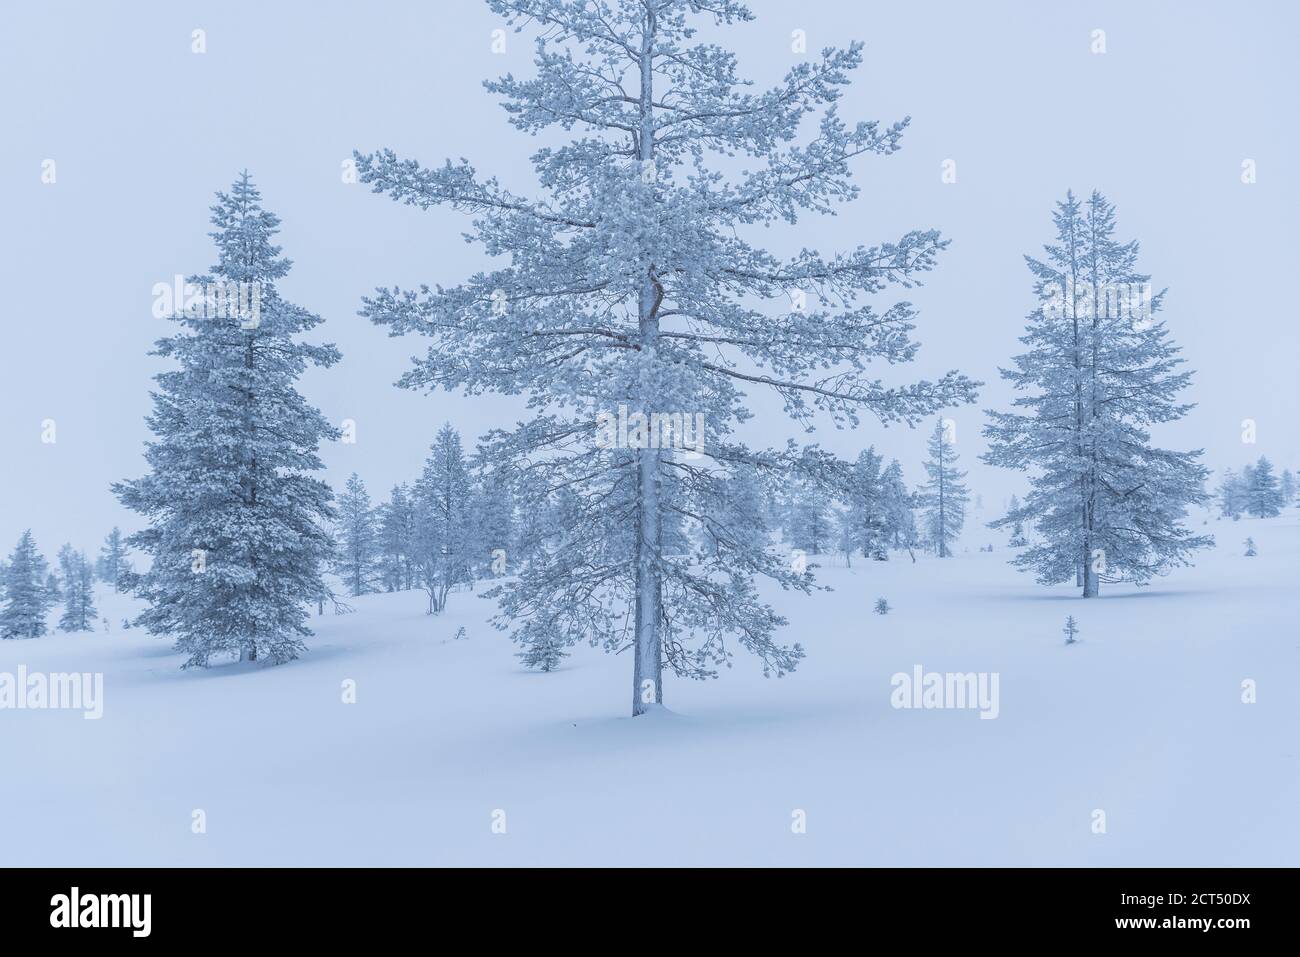 Sombre, isolé, minimaliste hiver magnifique neige couverte paysage de Noël avec des arbres glacés en Laponie, Finlande, cercle arctique, Europe Banque D'Images